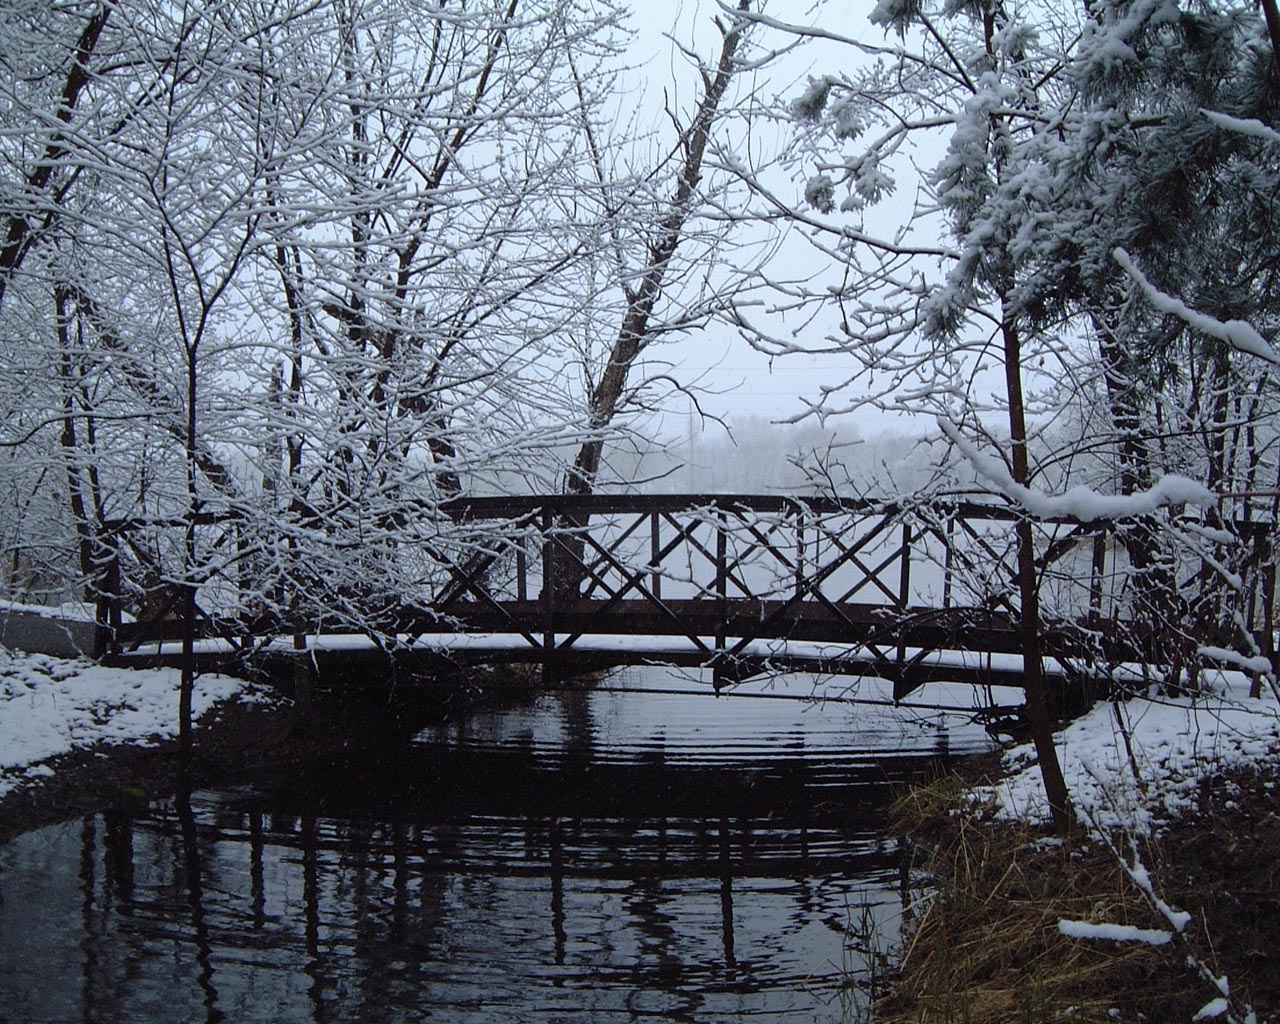 Bridge in winter wallpaper. Bridge in winter